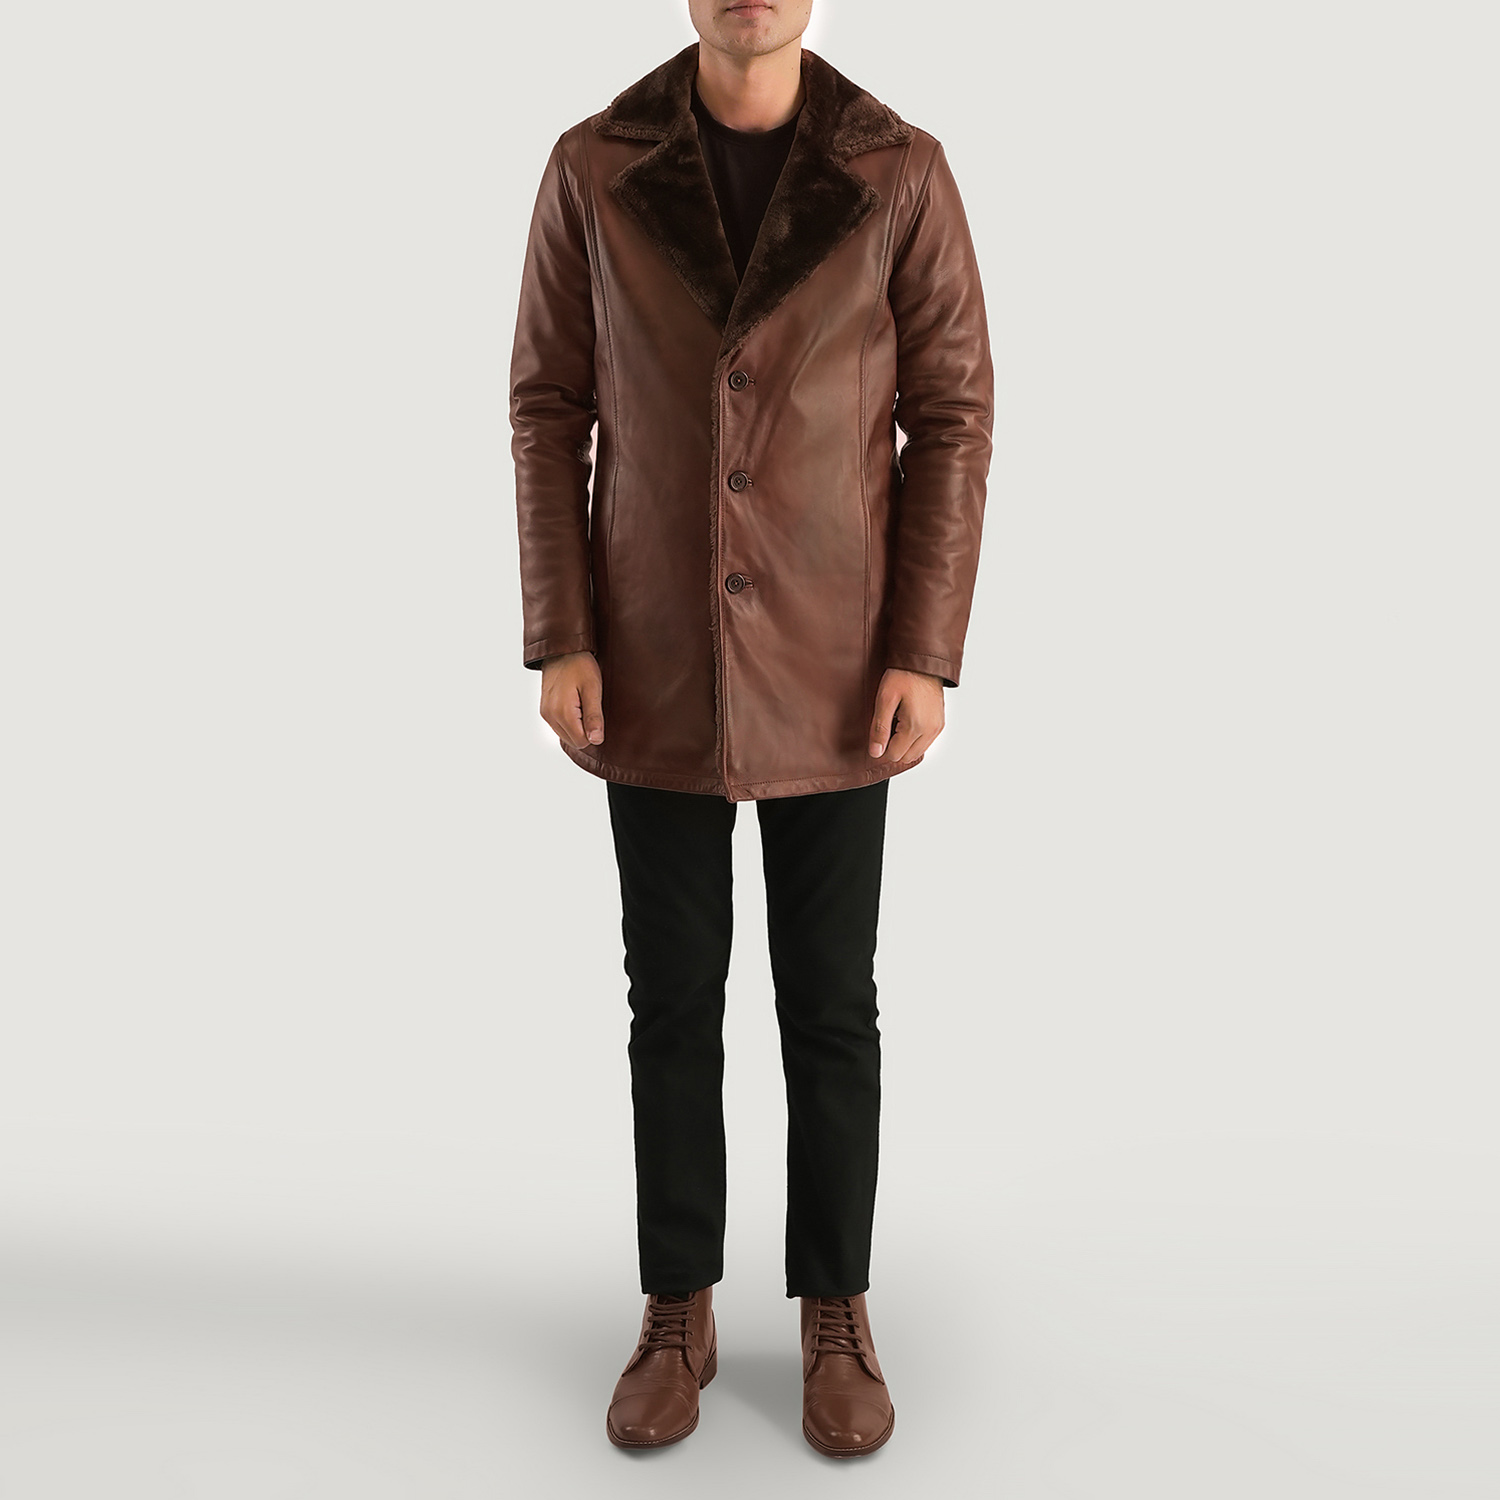 Men's Distressed Leather Fur Coat